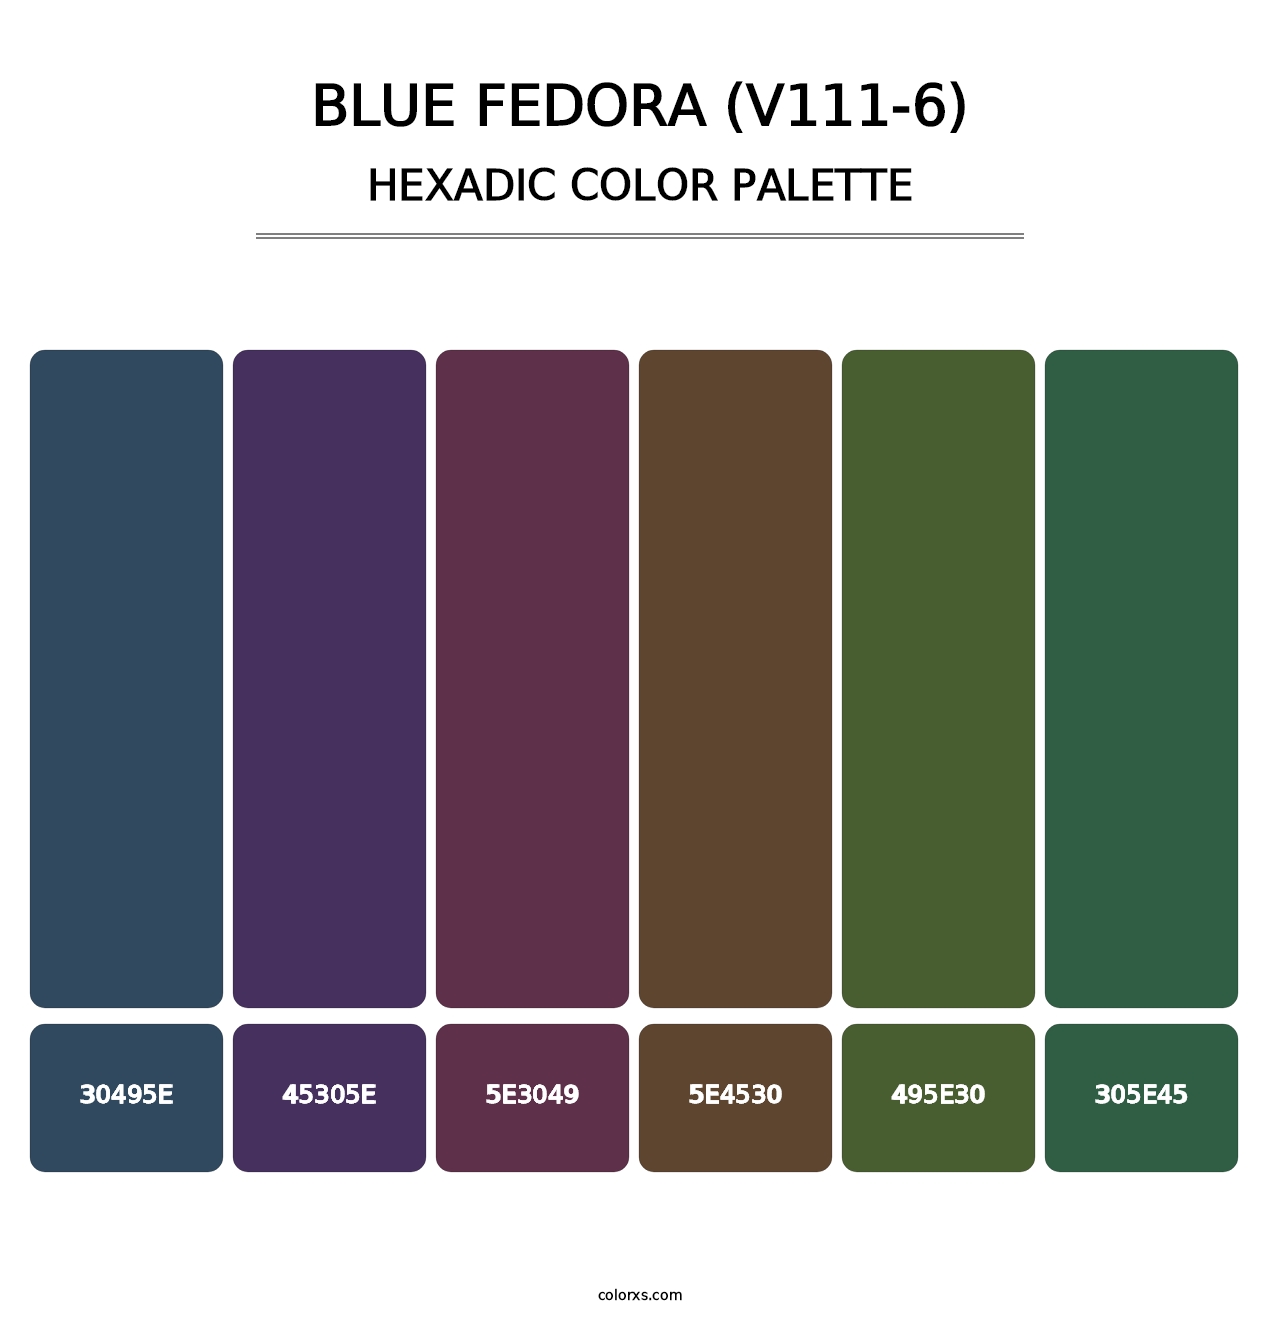 Blue Fedora (V111-6) - Hexadic Color Palette